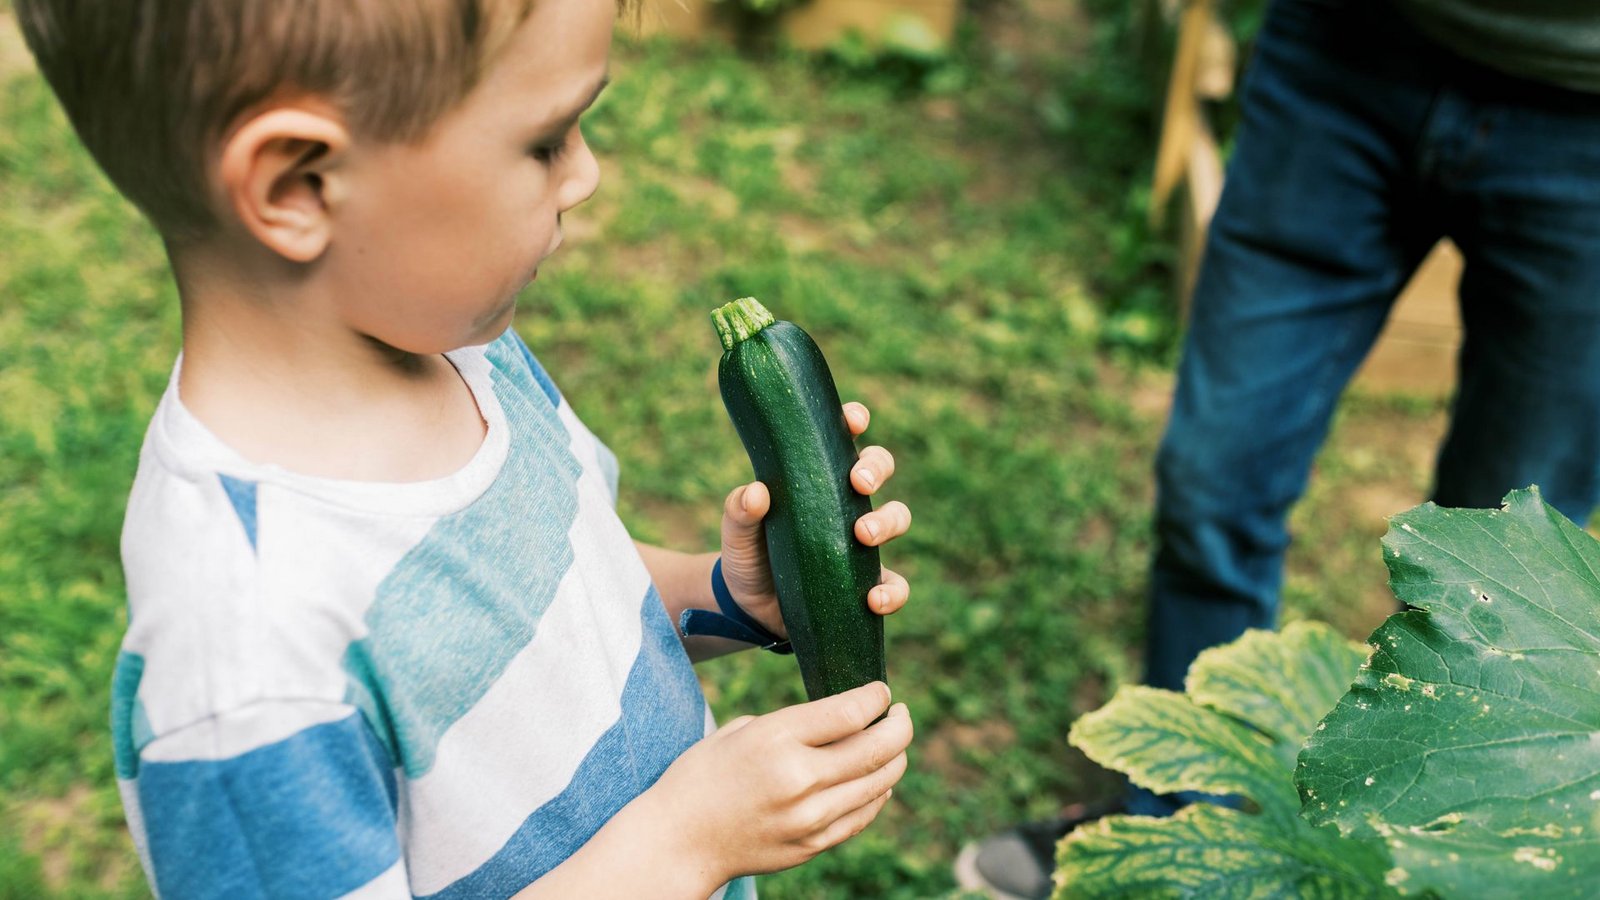 Die Wachstums- und Ernährungswerte sind  bei vegetarisch ernährten Kindern dieselben wie bei Kindern, die Fleisch essen.Foto: imago/Cavan Images